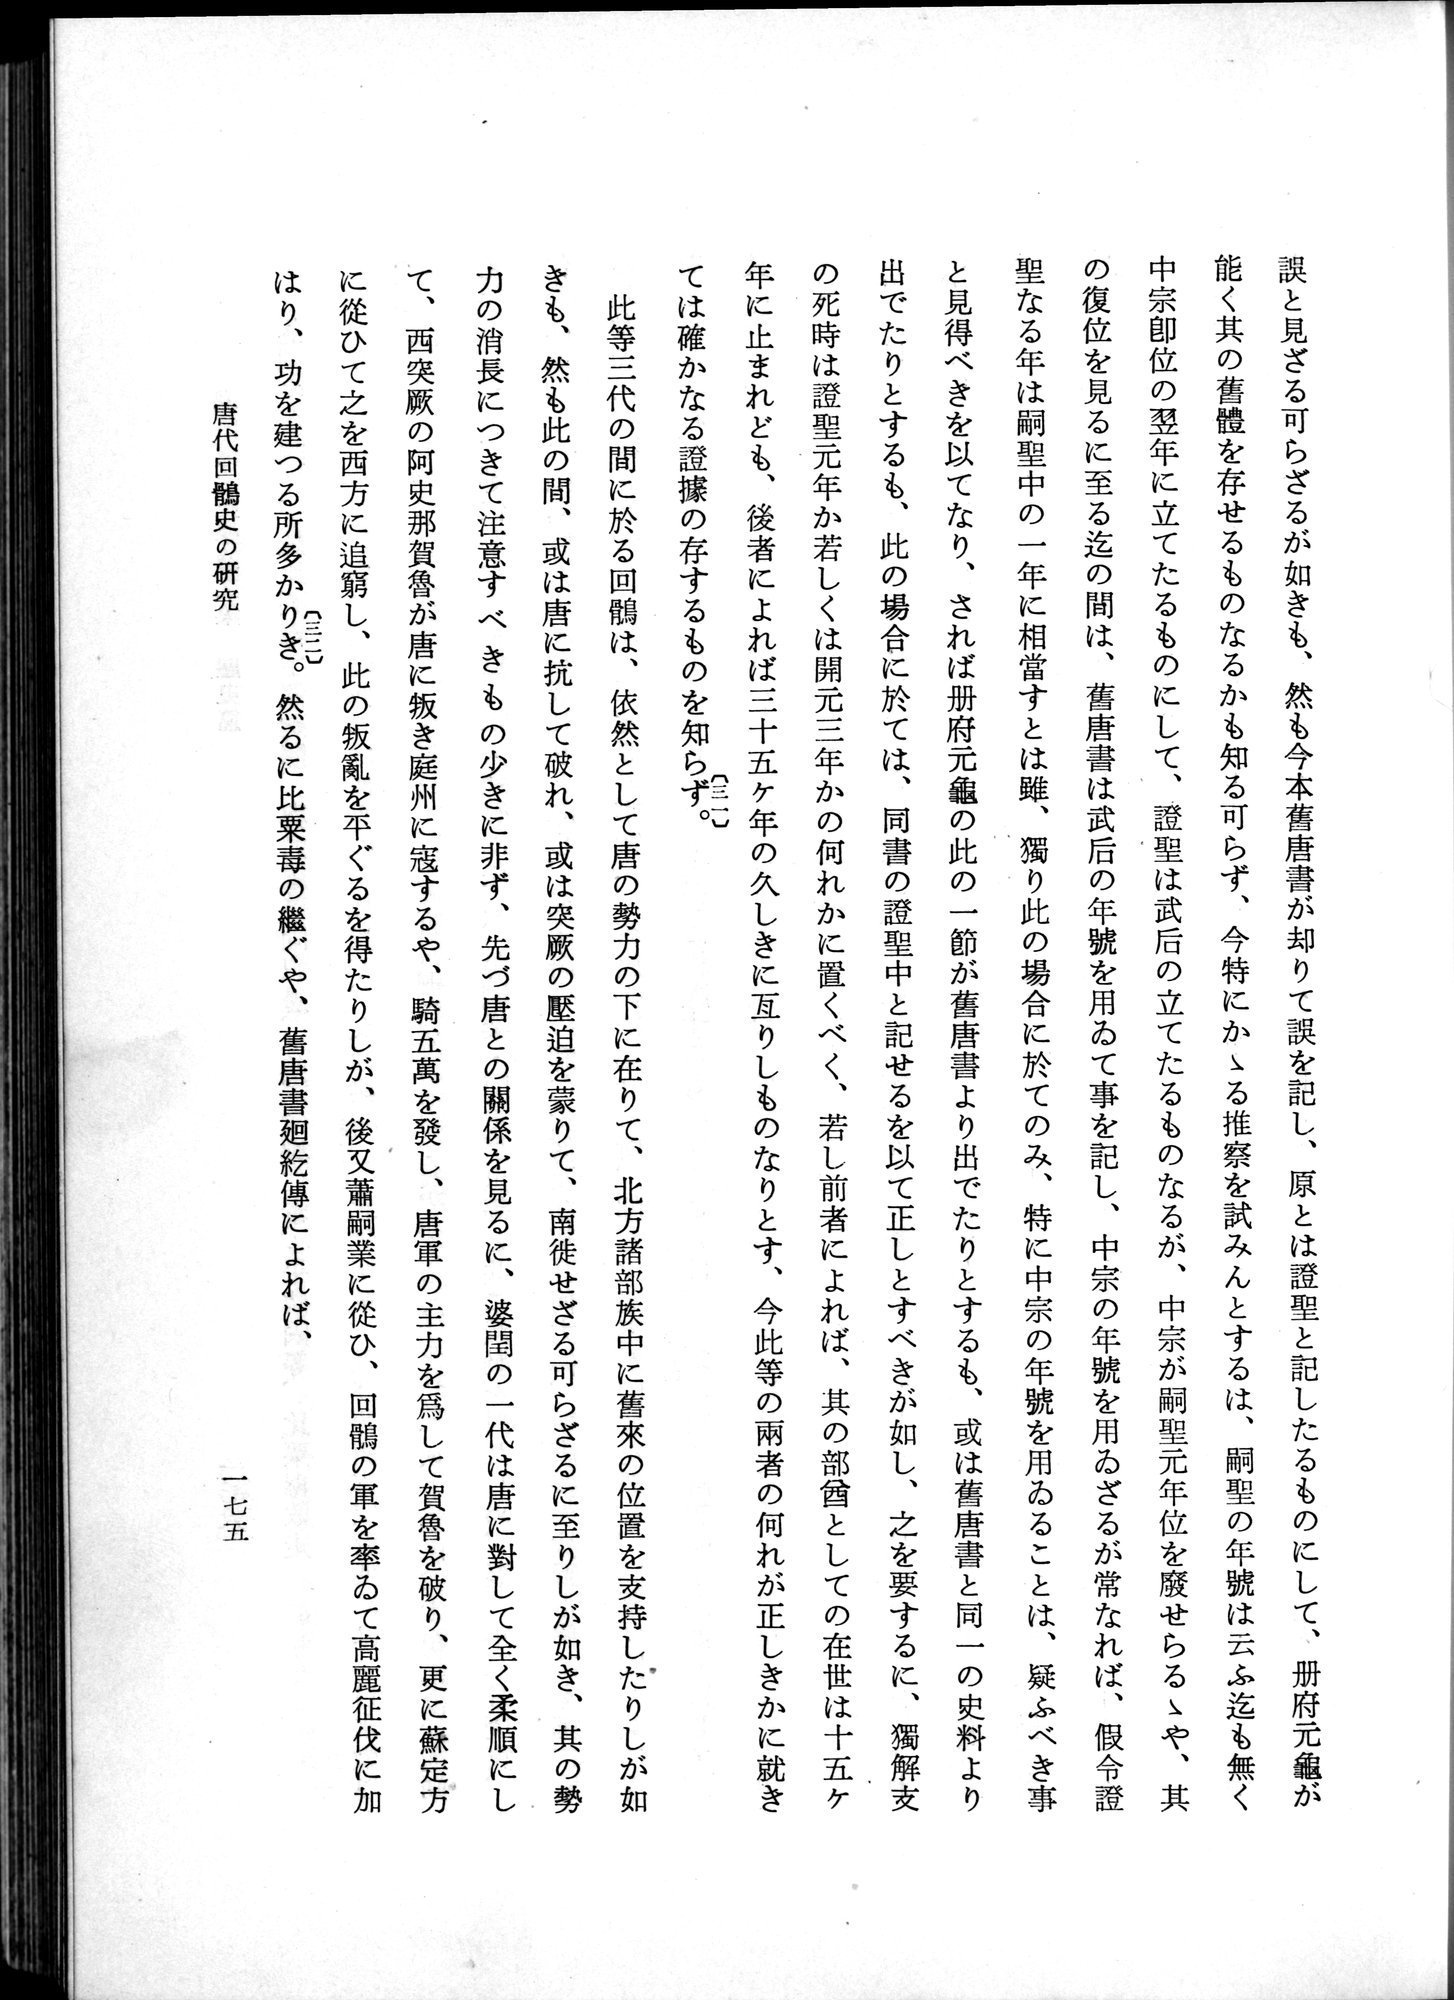 羽田博士史学論文集 : vol.1 / Page 213 (Grayscale High Resolution Image)